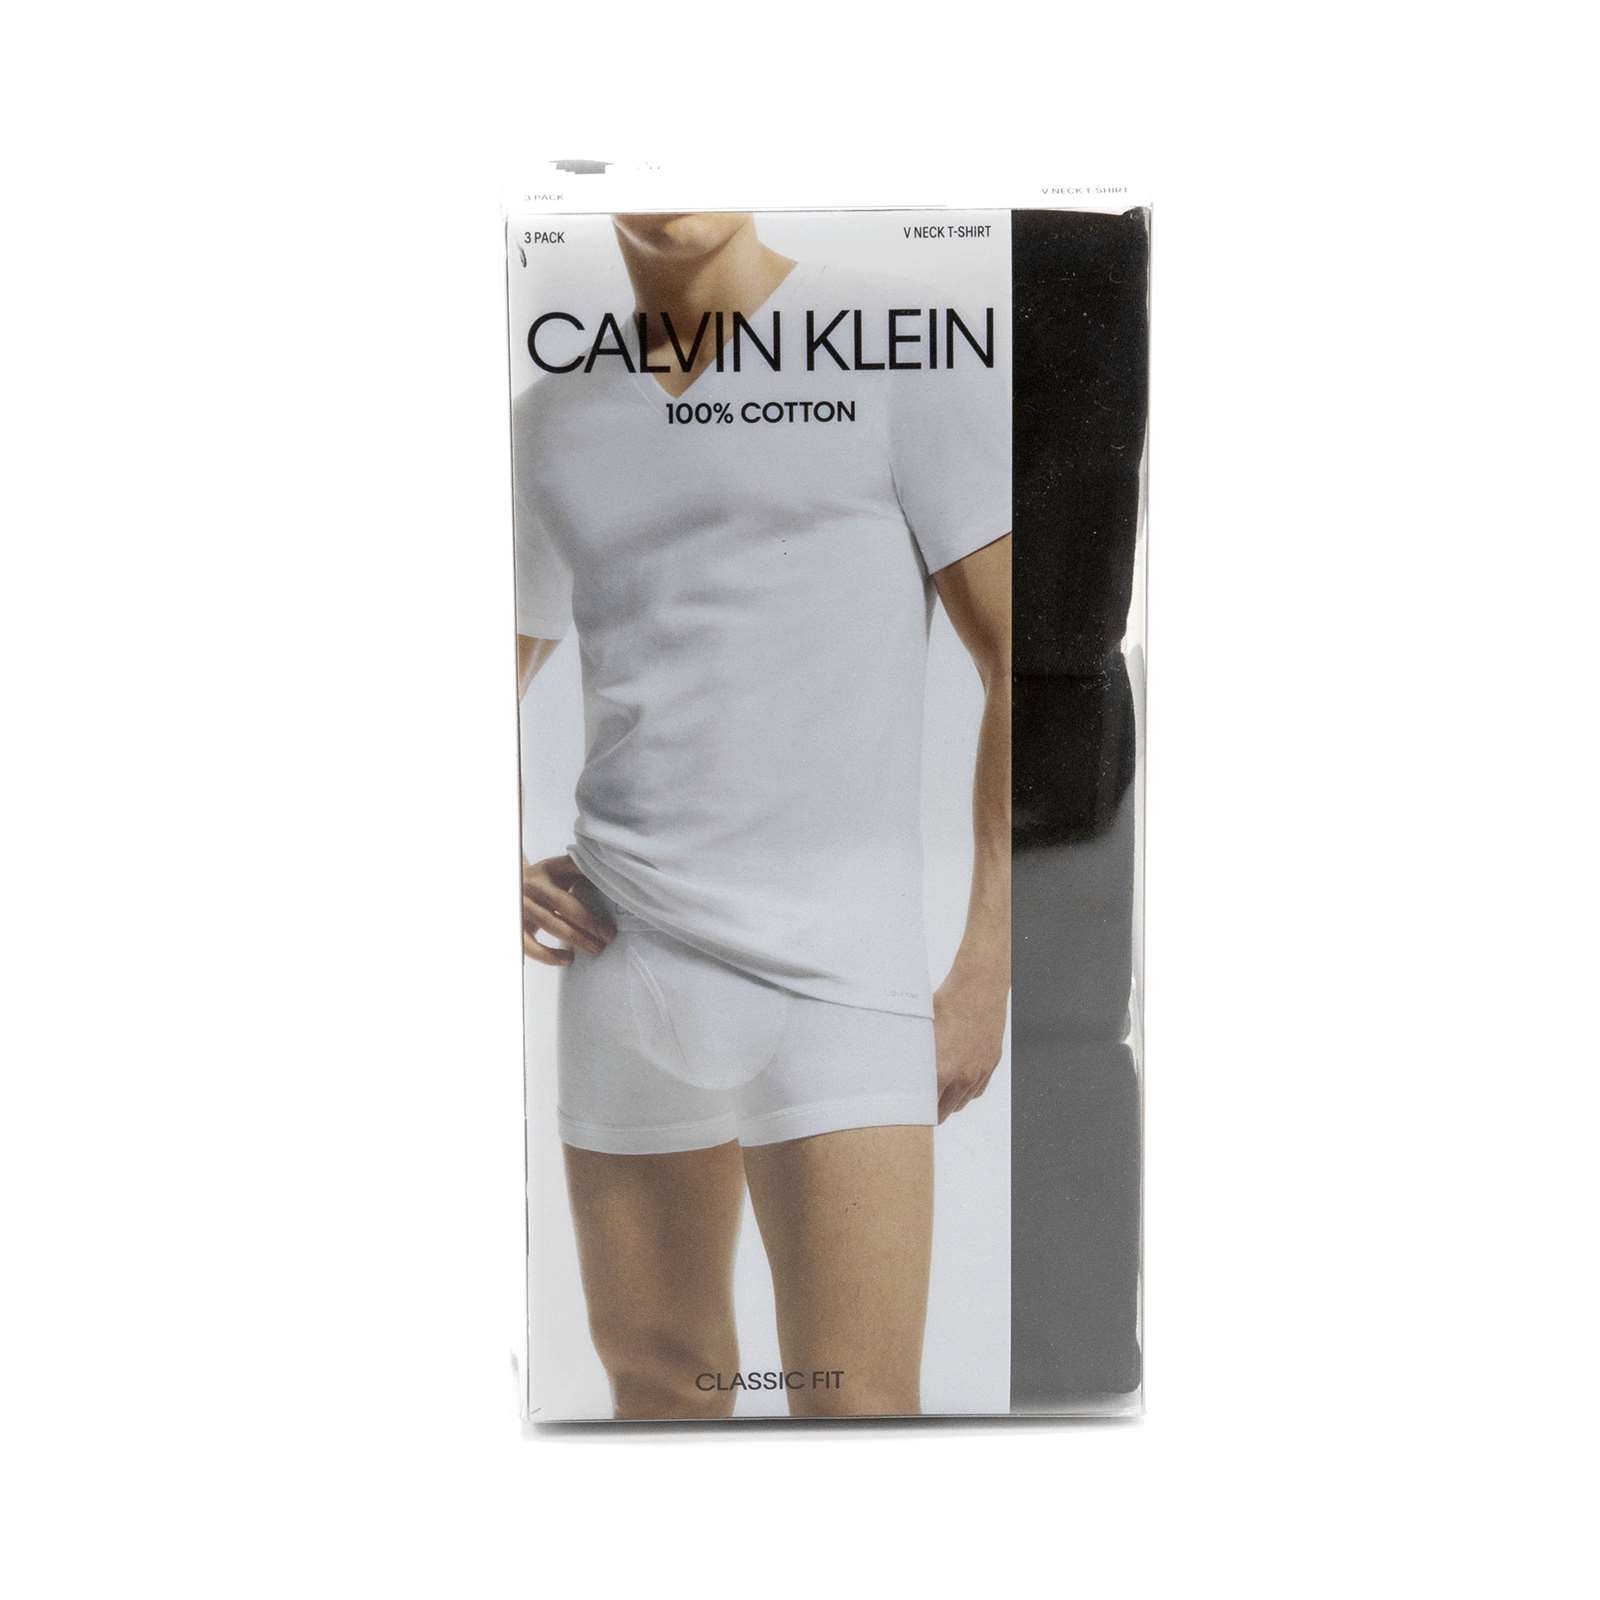 Calvin Klein Men Cotton Classic Fit 3-Pack V-Neck T-Shirt